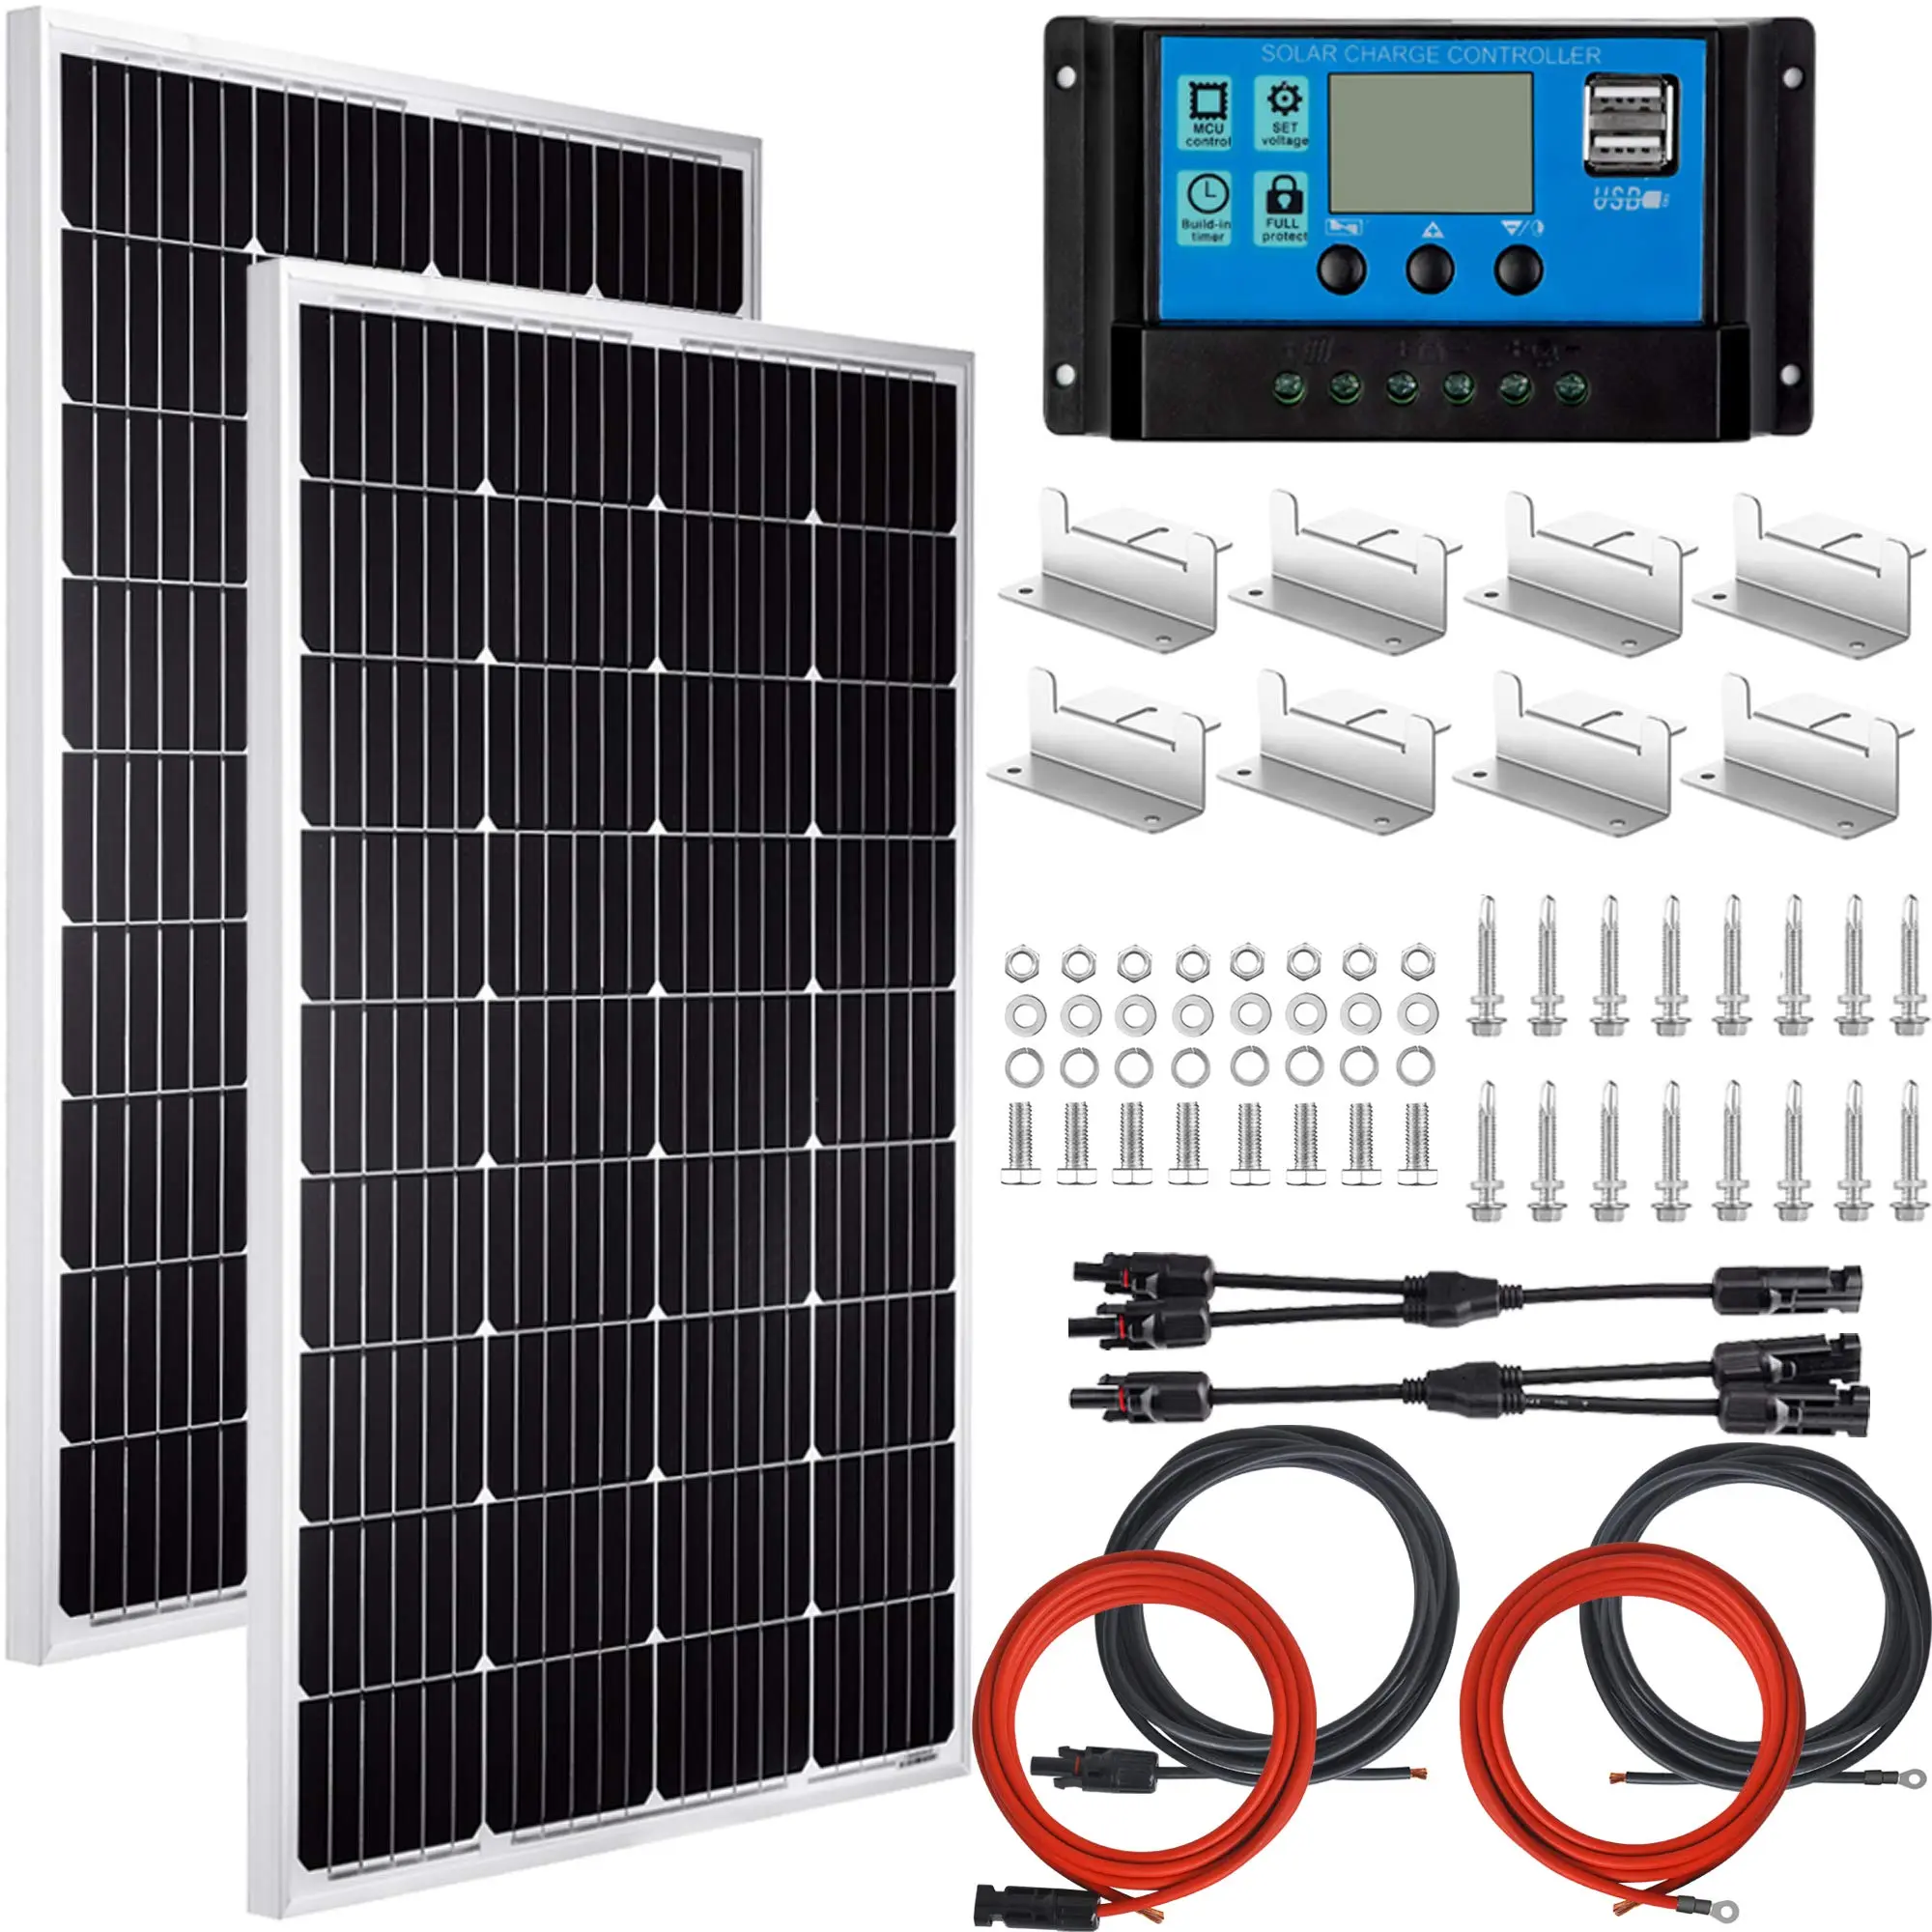 24v solar panel kit - Is 24V solar better than 12V